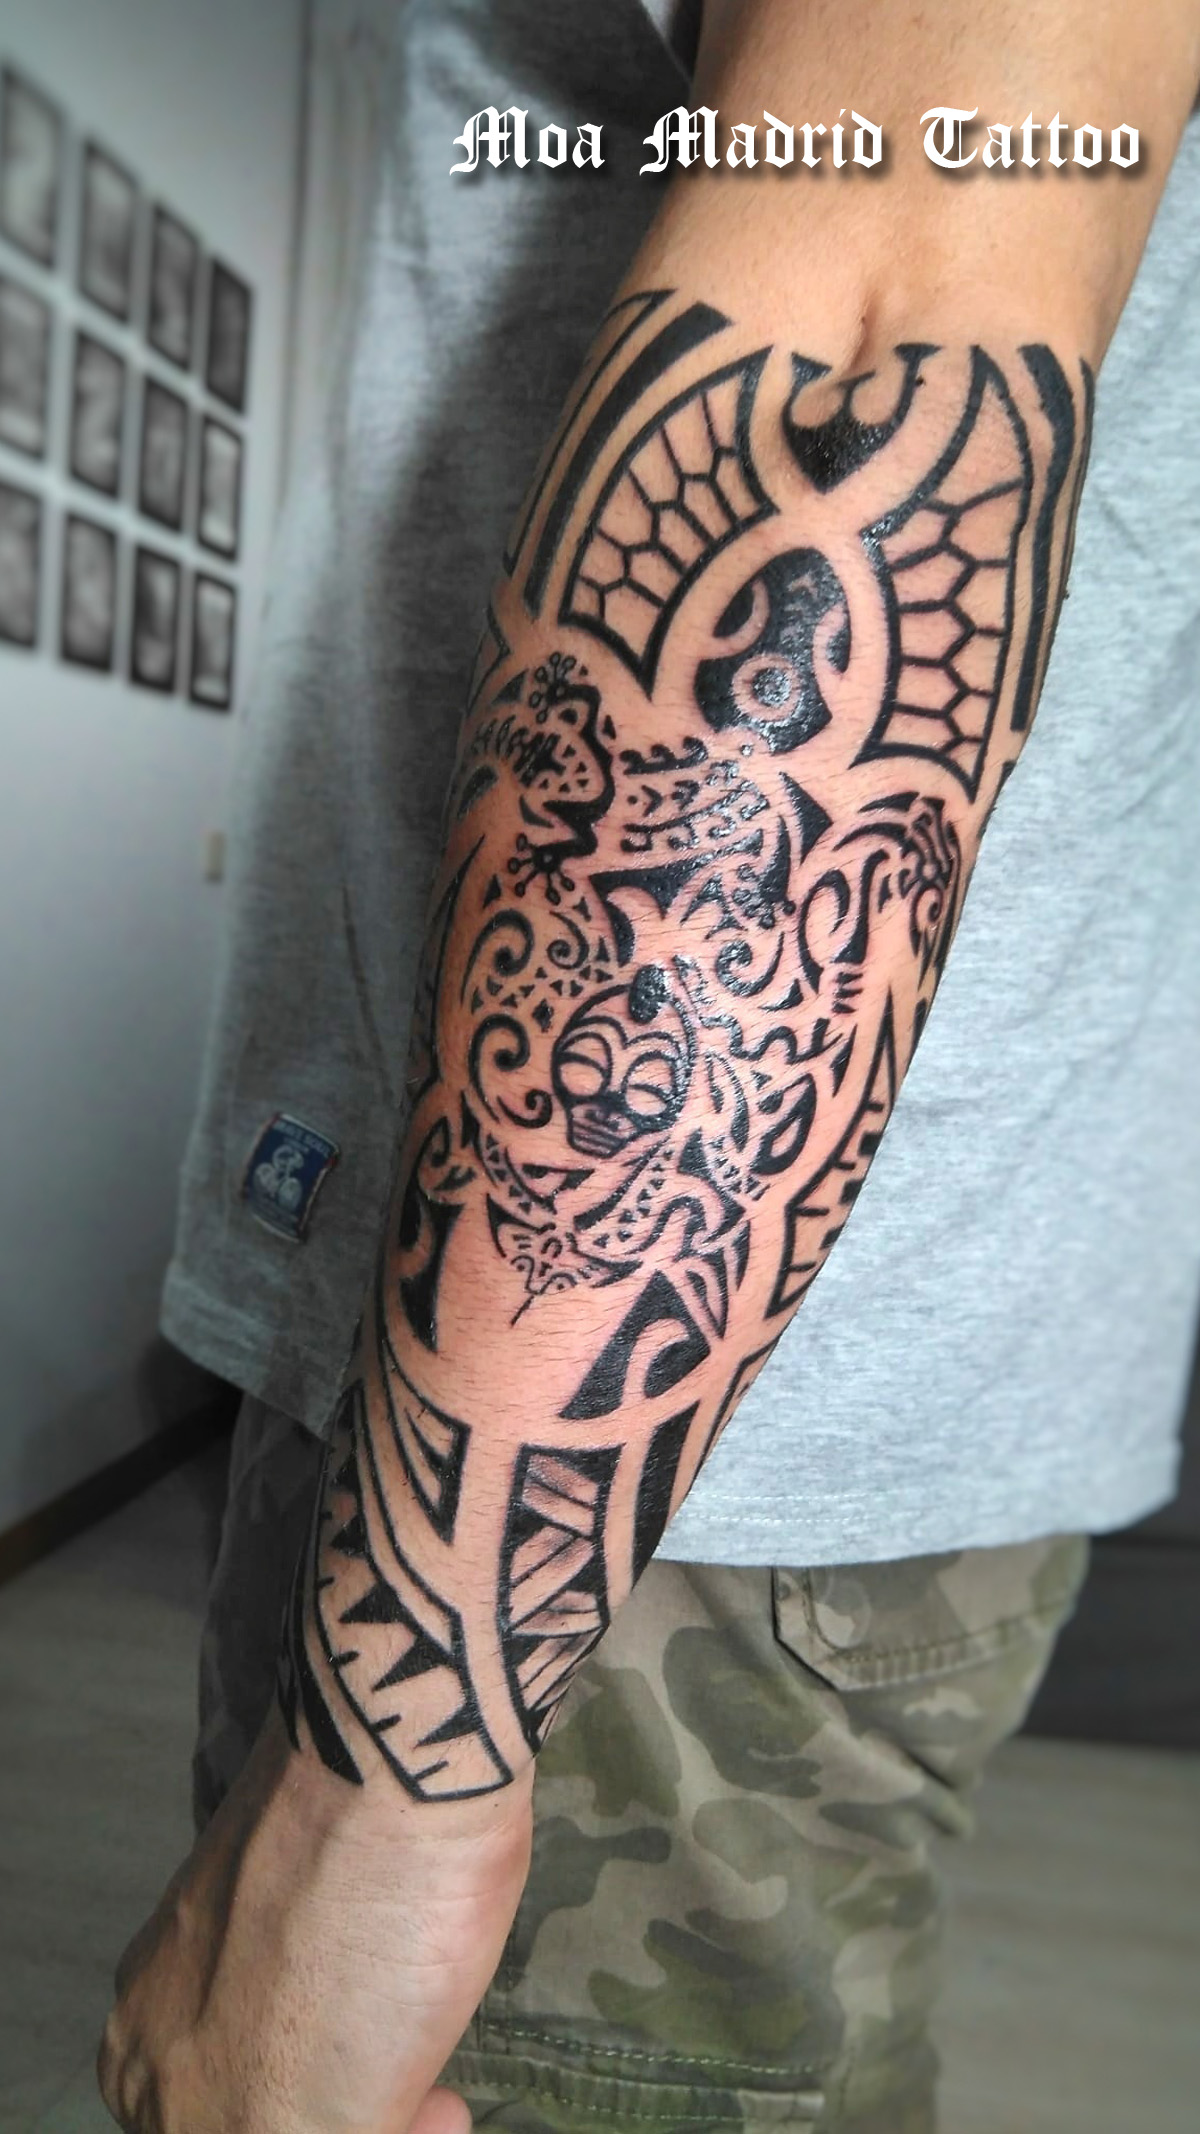 Tatuaje maorí en el antebrazo: tortuga con numerosos detalles